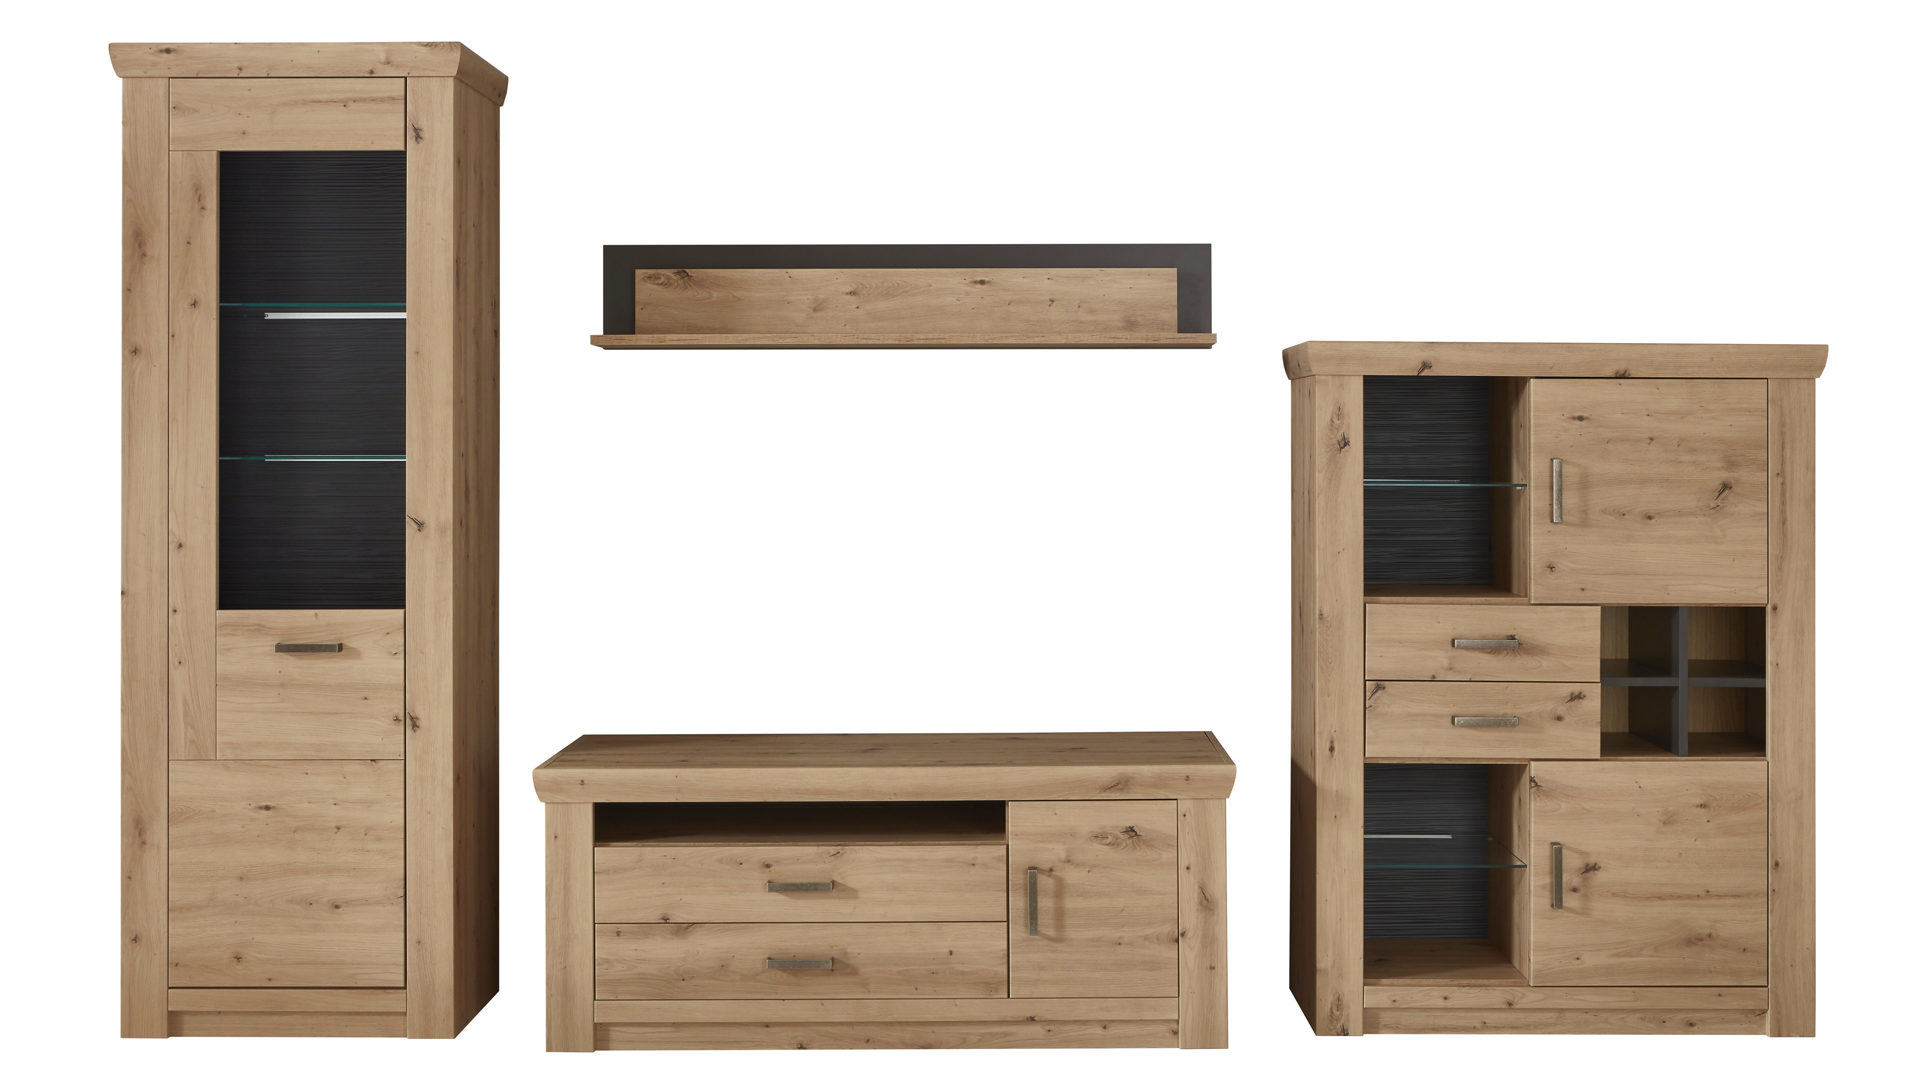 Wohnwand Mca furniture aus Holz in Holzfarben Wohnwand balkeneiche- & anthrazitfarbene Kunststoffoberflächen – Breite ca. 336 cm